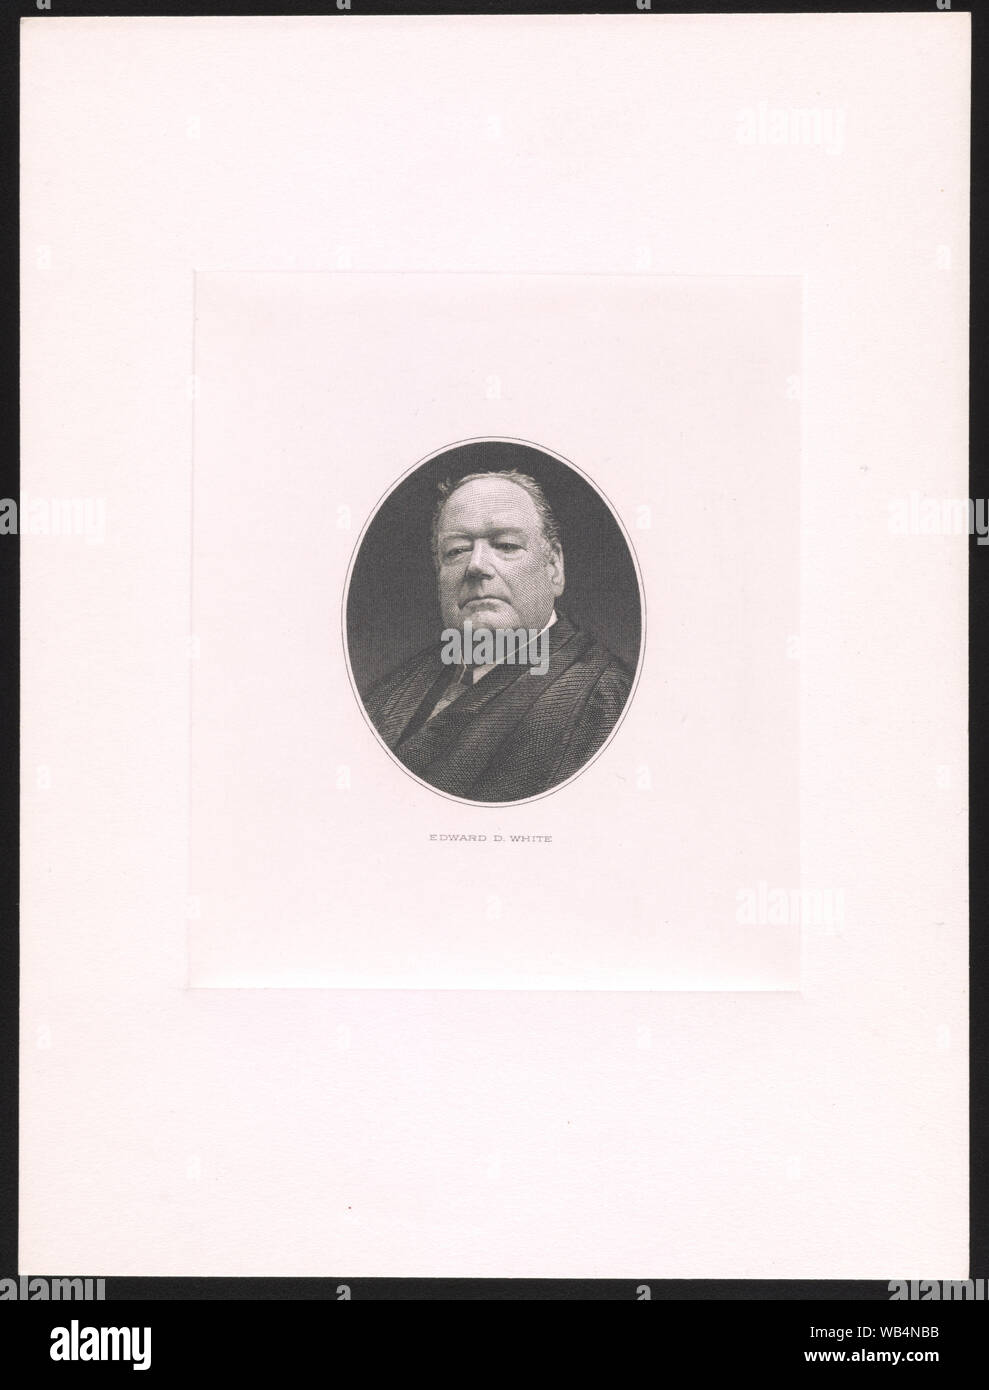 Edward D. weiße Abstract / Medium: 1 drucken: Stahlstich; Bild 6 x 4,9 cm, Platte 11,6 x 9,8 cm, auf Blatt 20,4 x 15,3 cm. Stockfoto